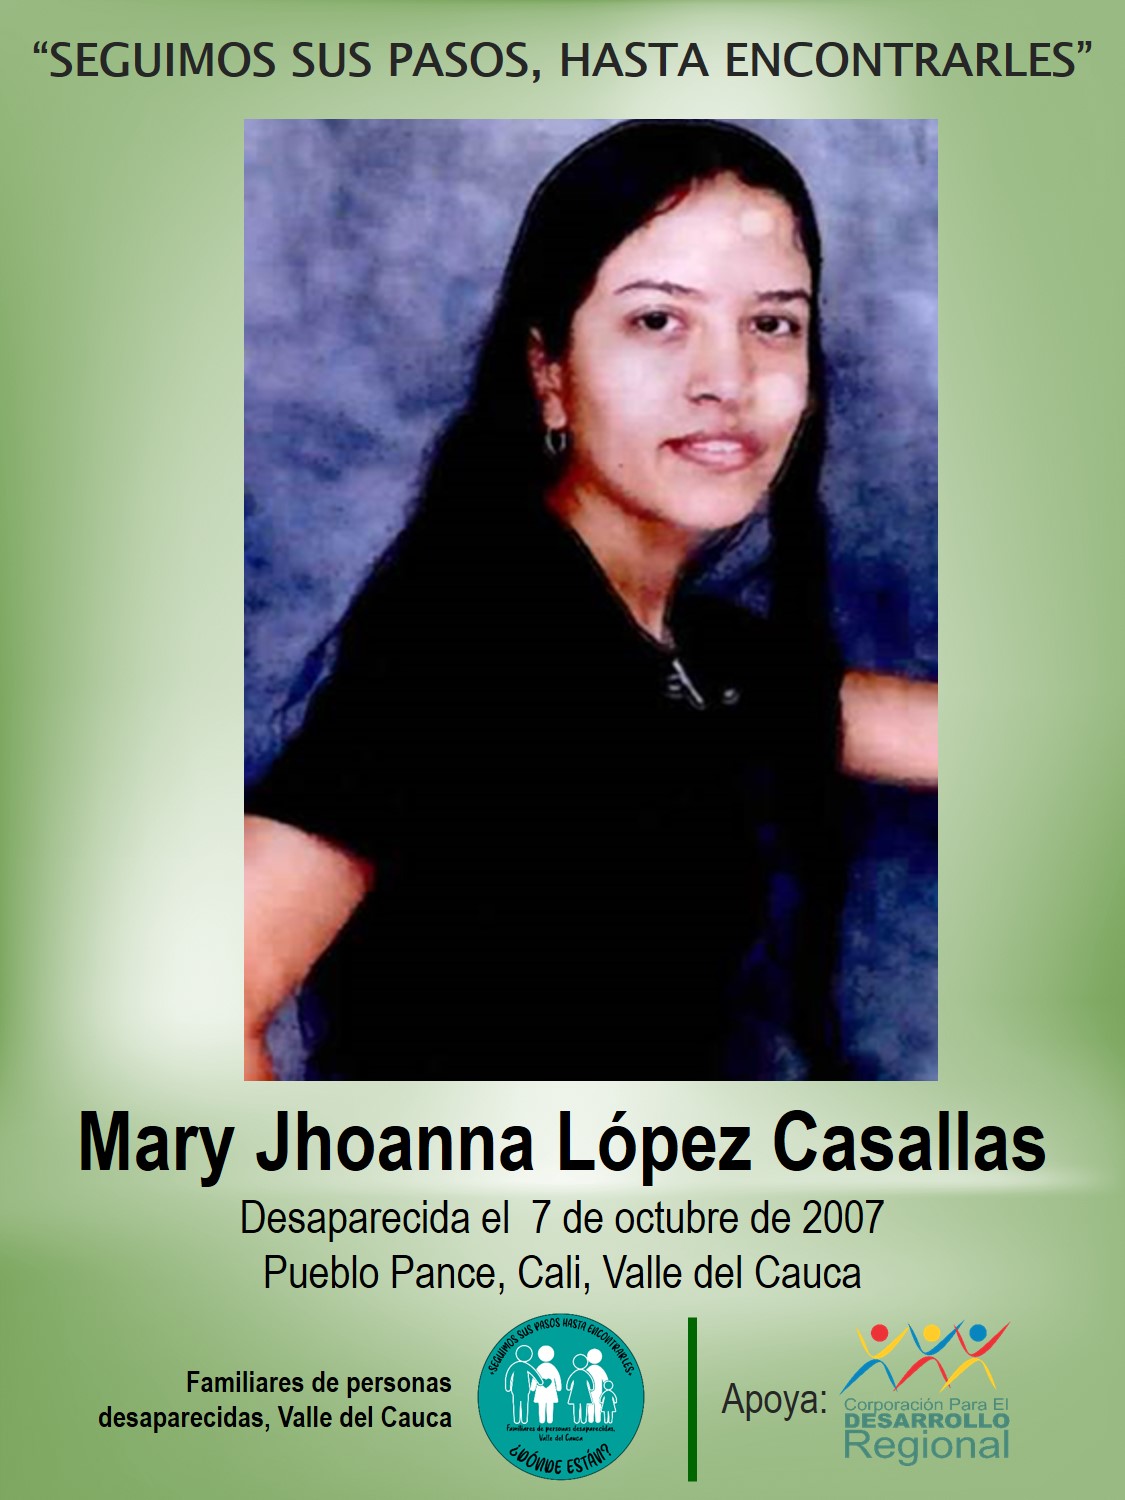 Mary Jhoanna López Casallas